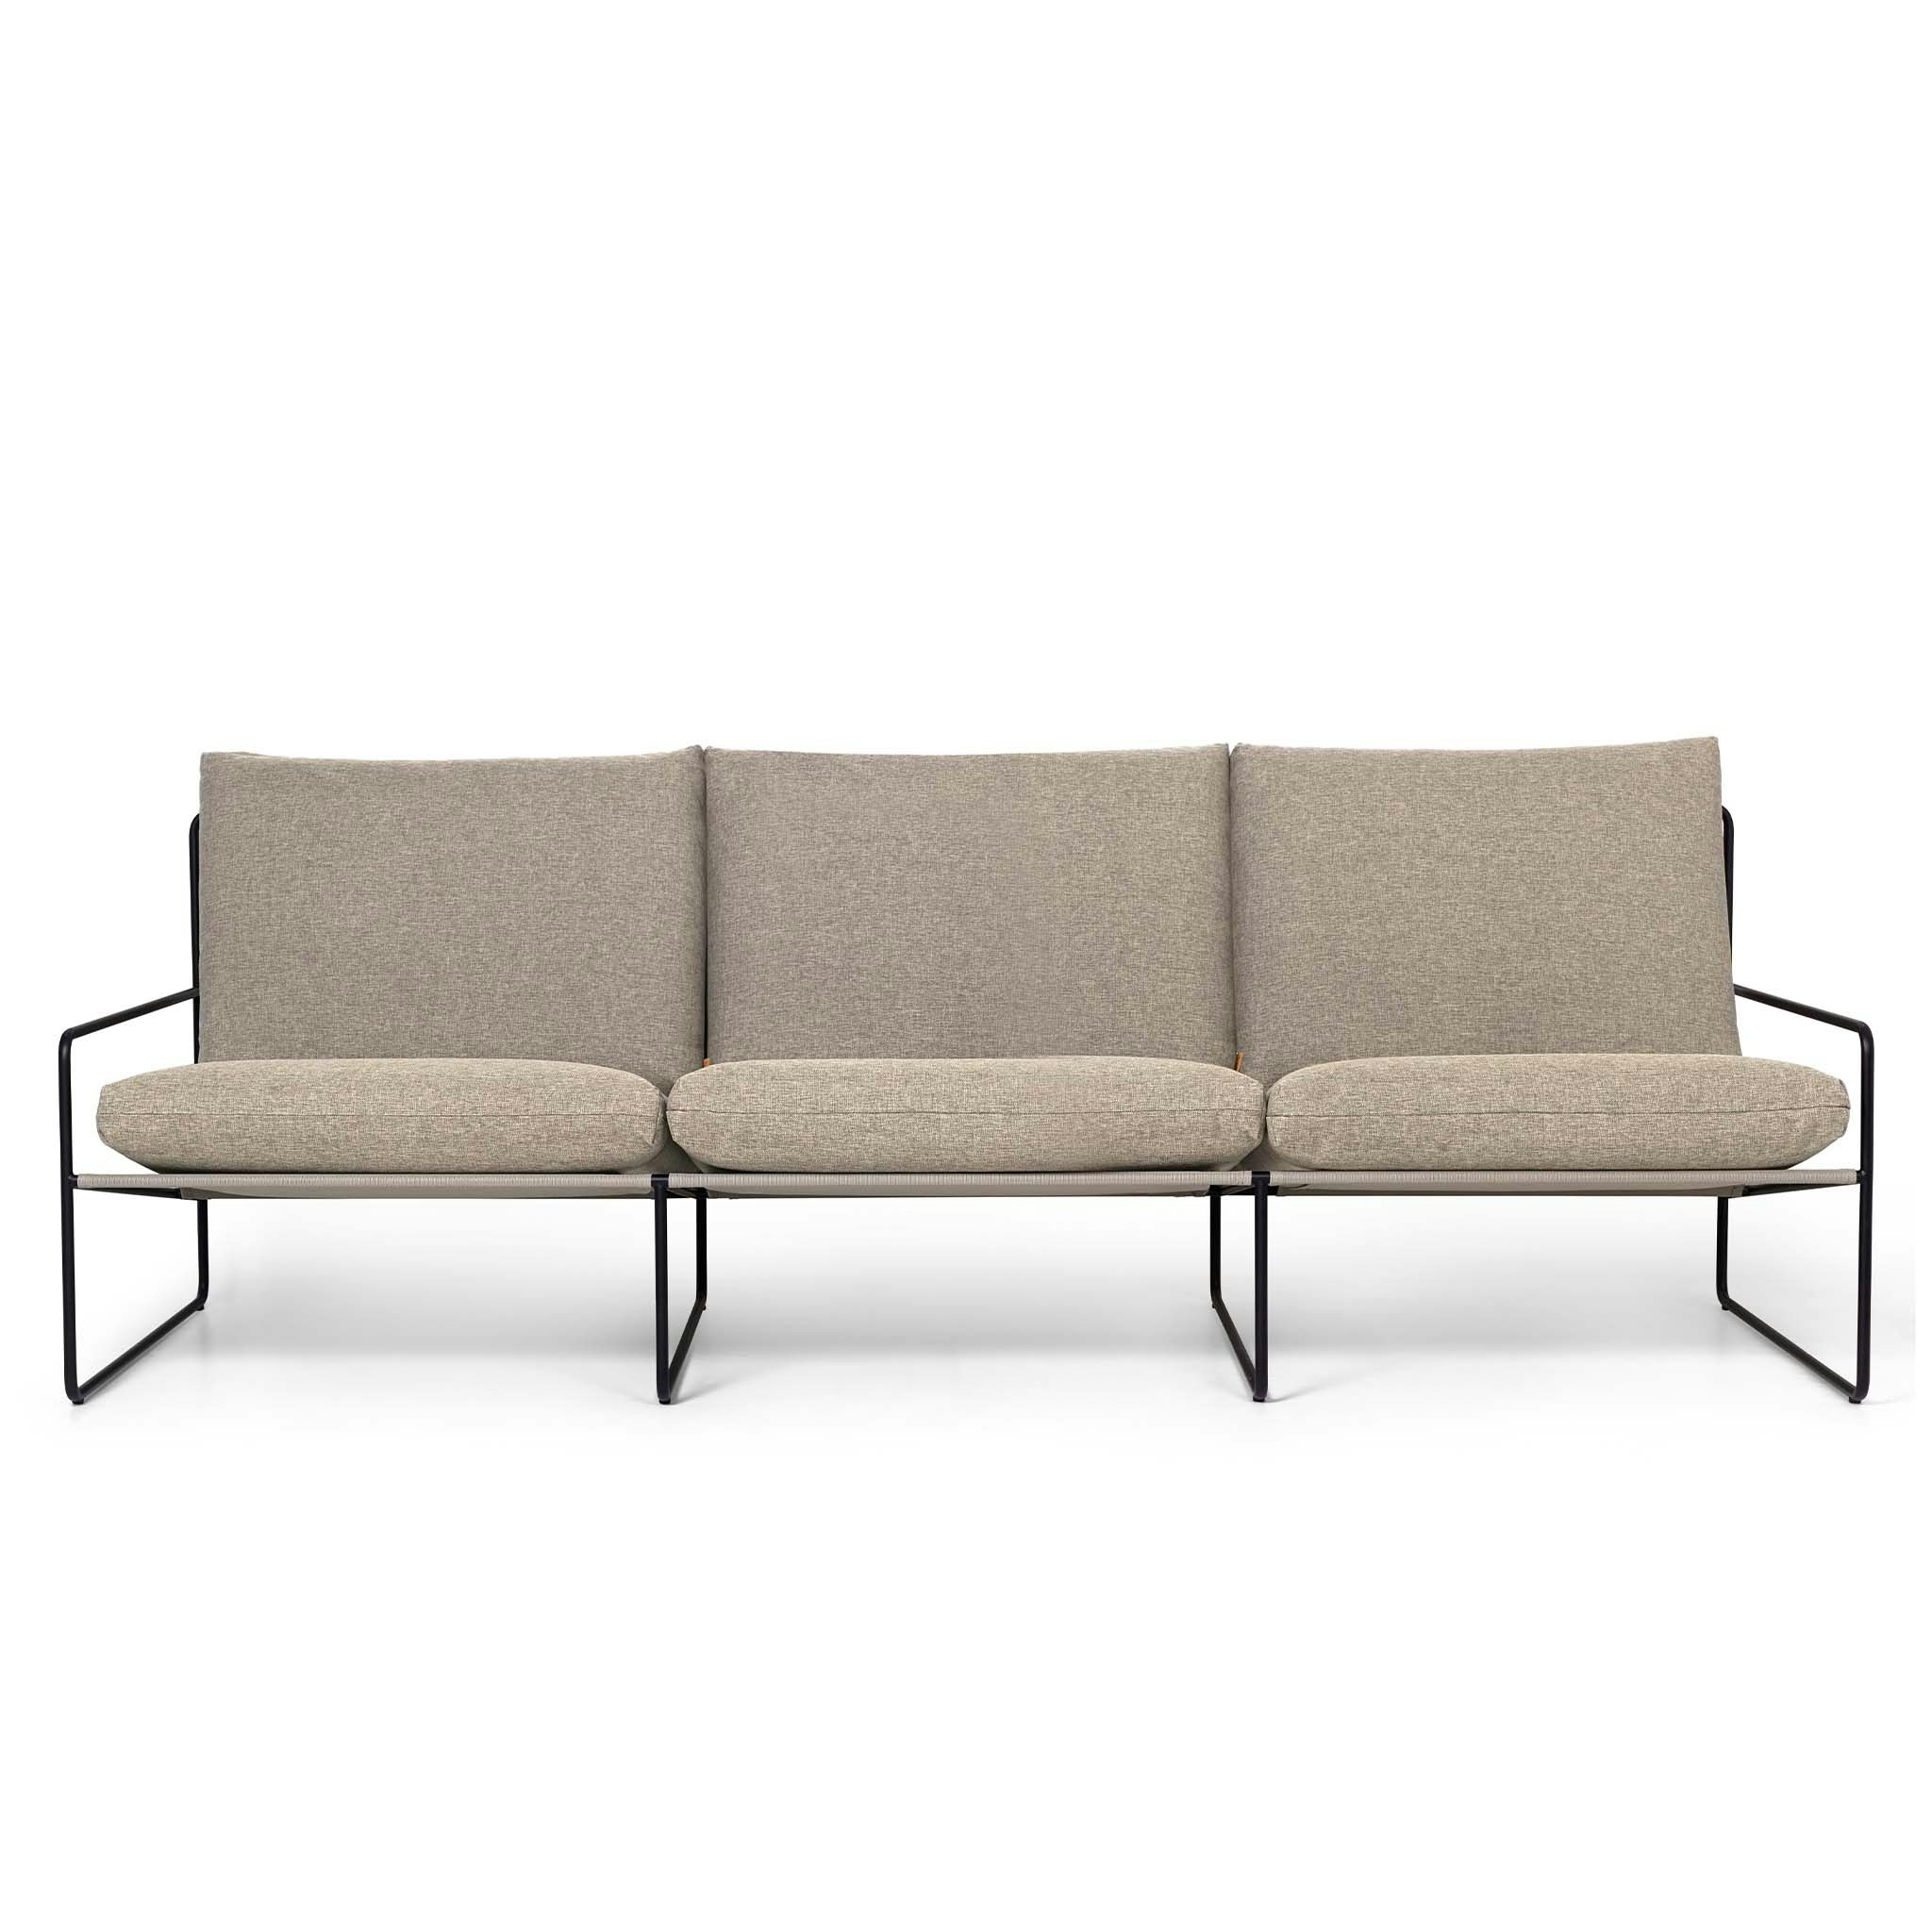 Desert Sofa 3 Seater By Ferm Living